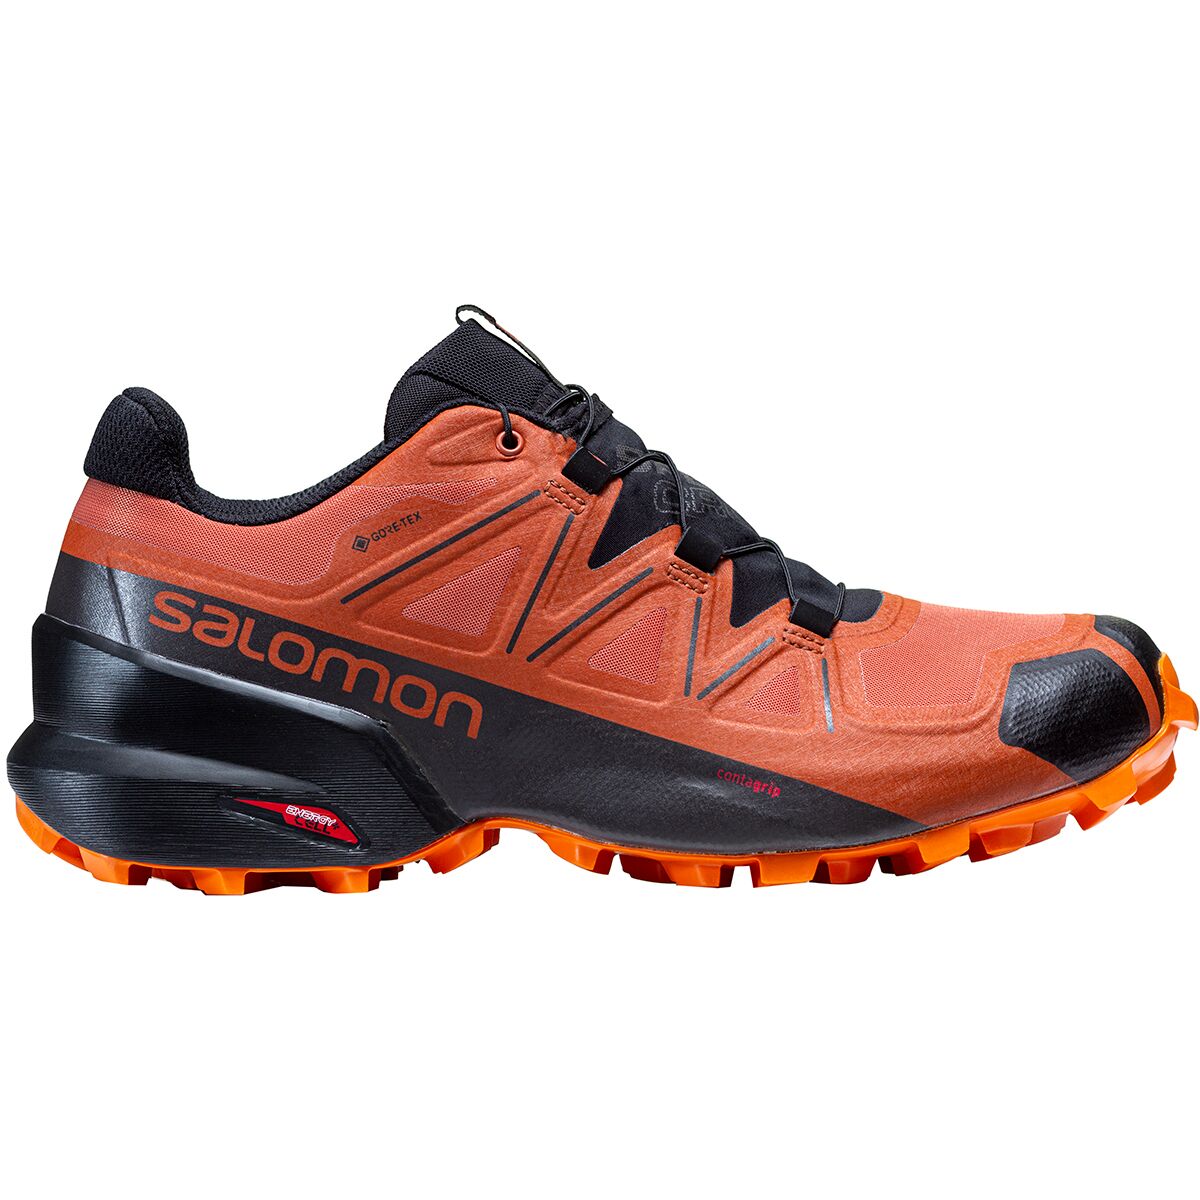 Speedcross 5 GTX Trail Running Shoe - Men